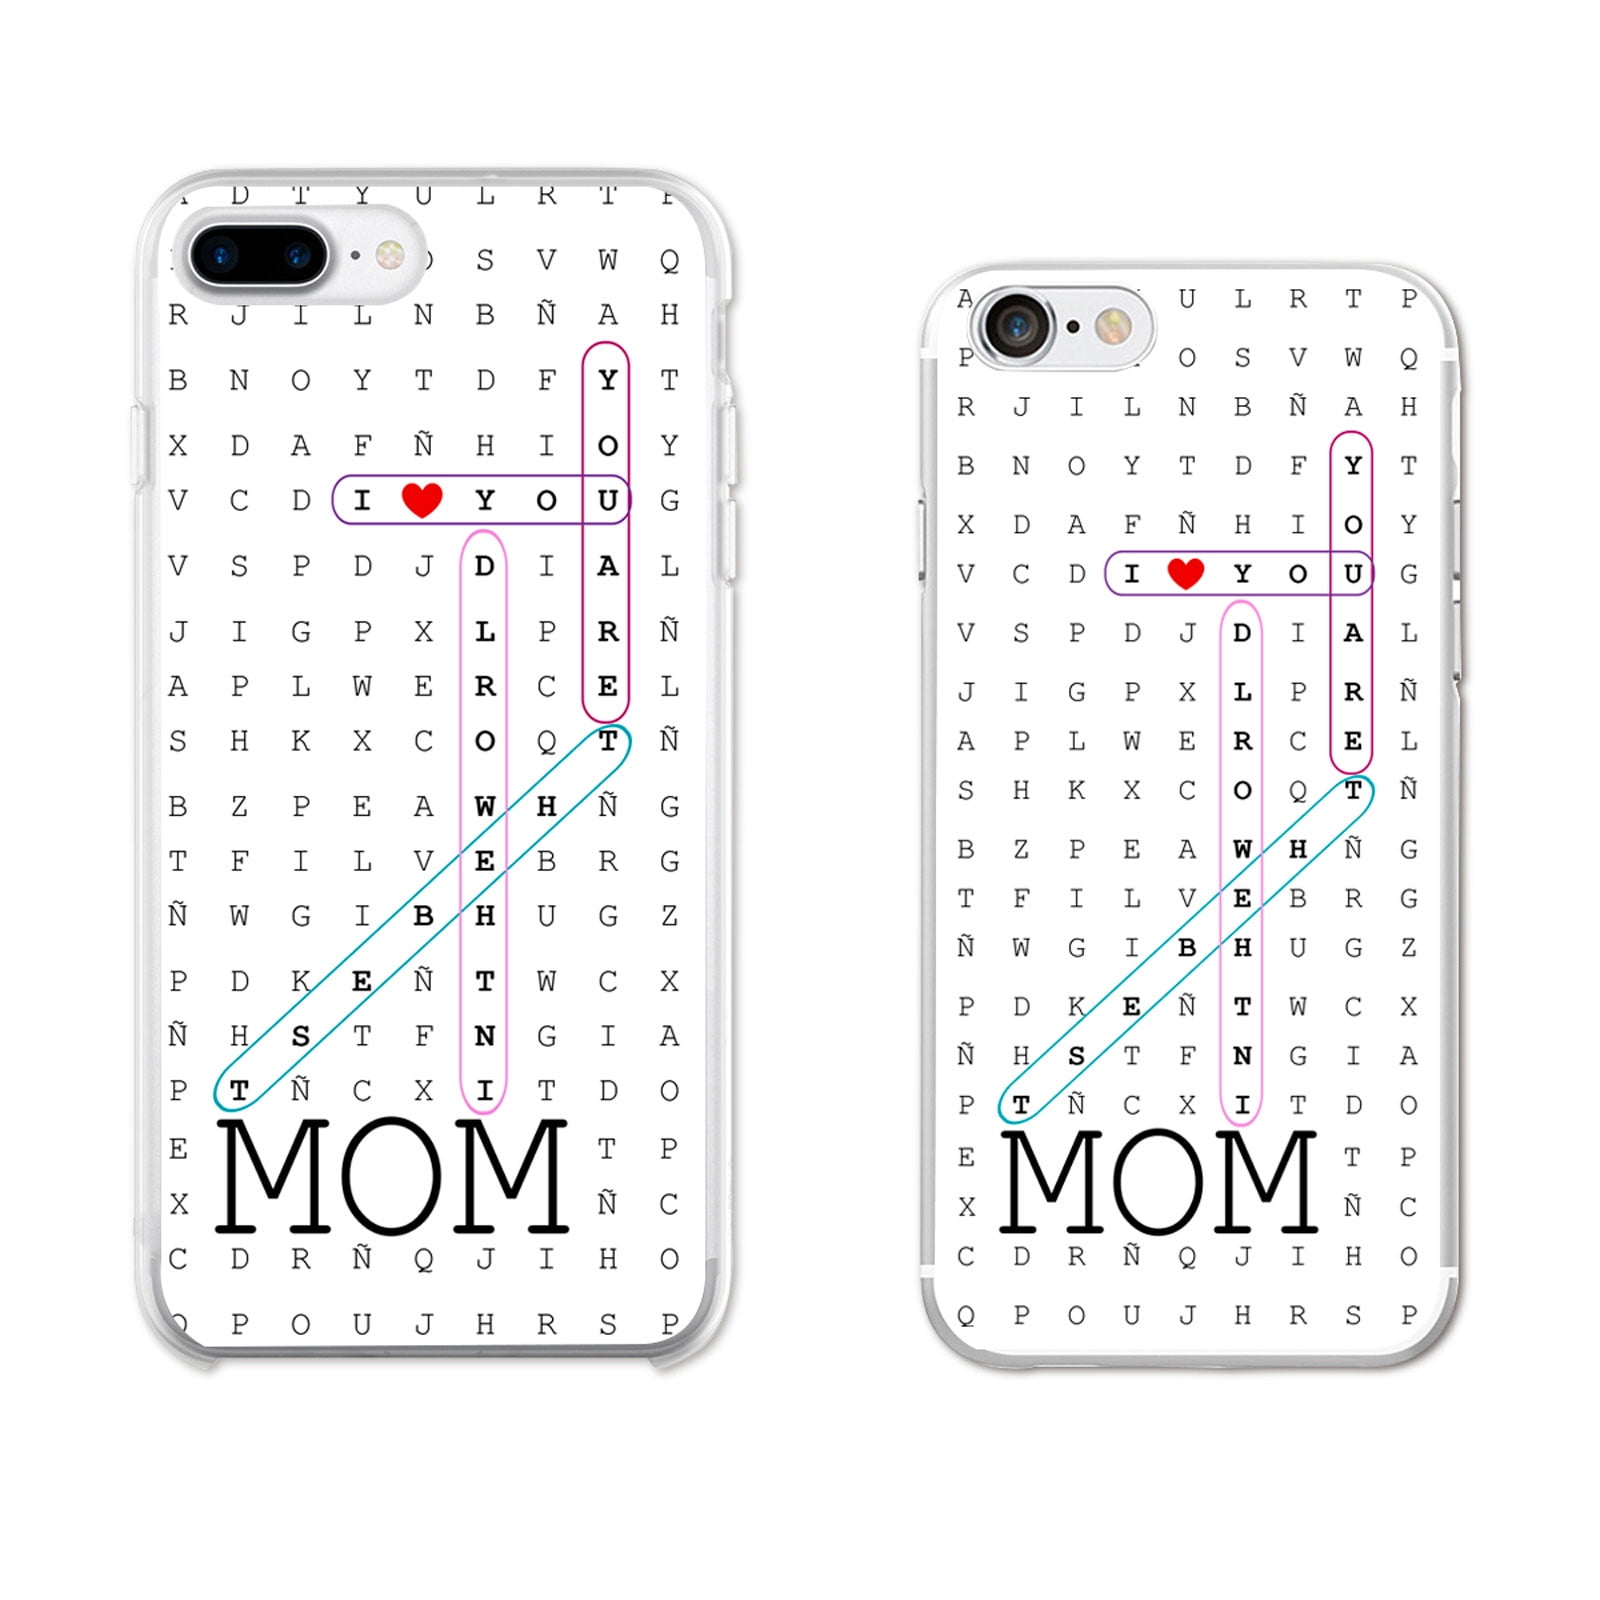 Ish Original Official Love You Mom Phone Case Cover Slim Soft Tpu For Apple Iphone X Walmart Com Walmart Com